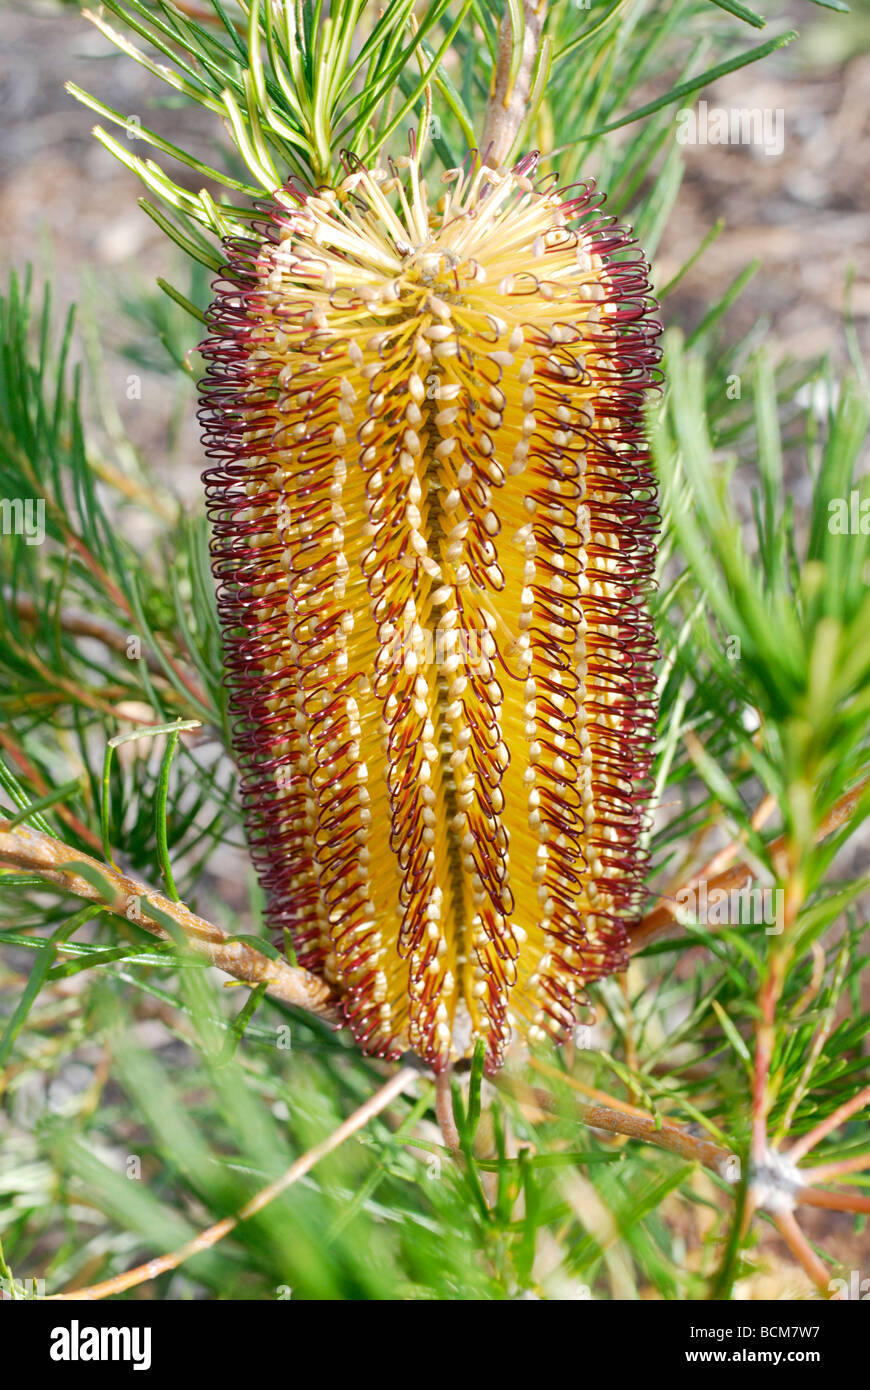 Bottle brush Australian native plant Stock Photo